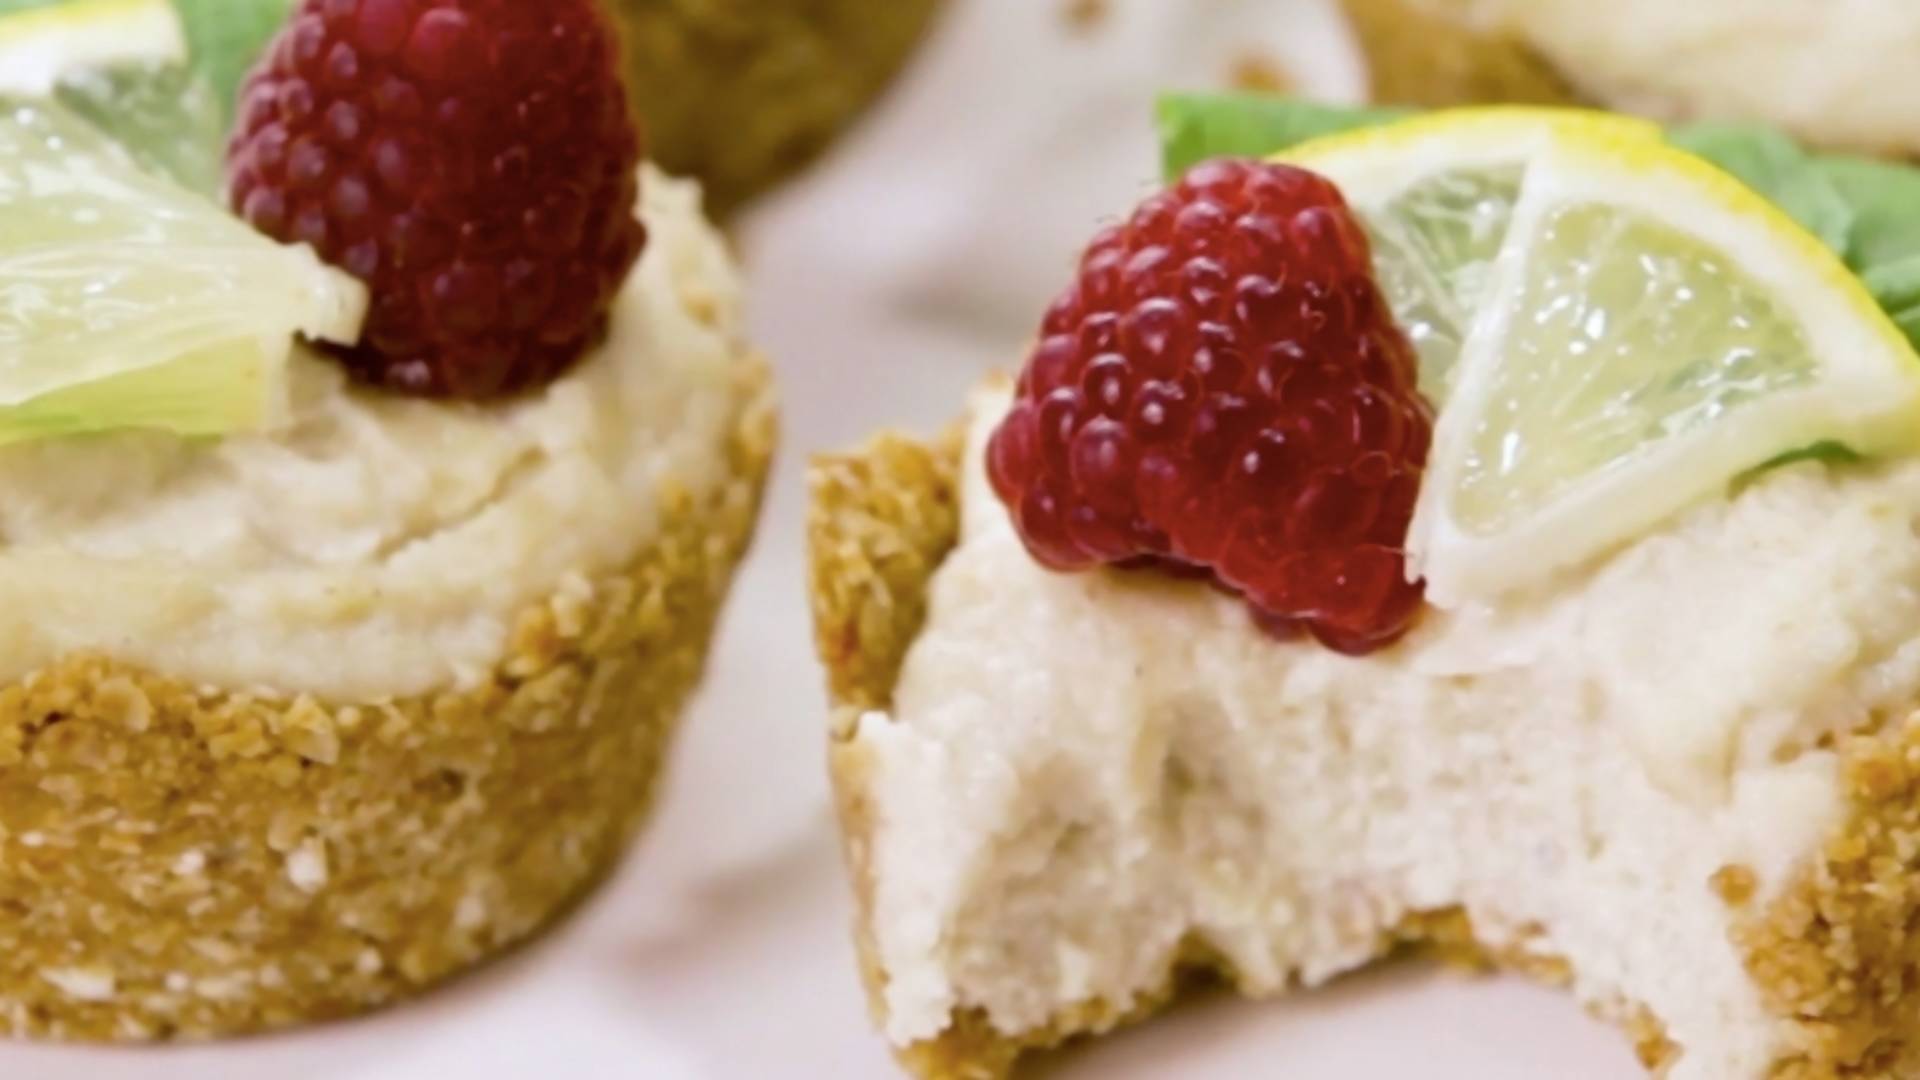 Vegánske cheesecake muffiny s malinami sú dezert, ktorý toto leto potrebuješ. Je sladký a svieži